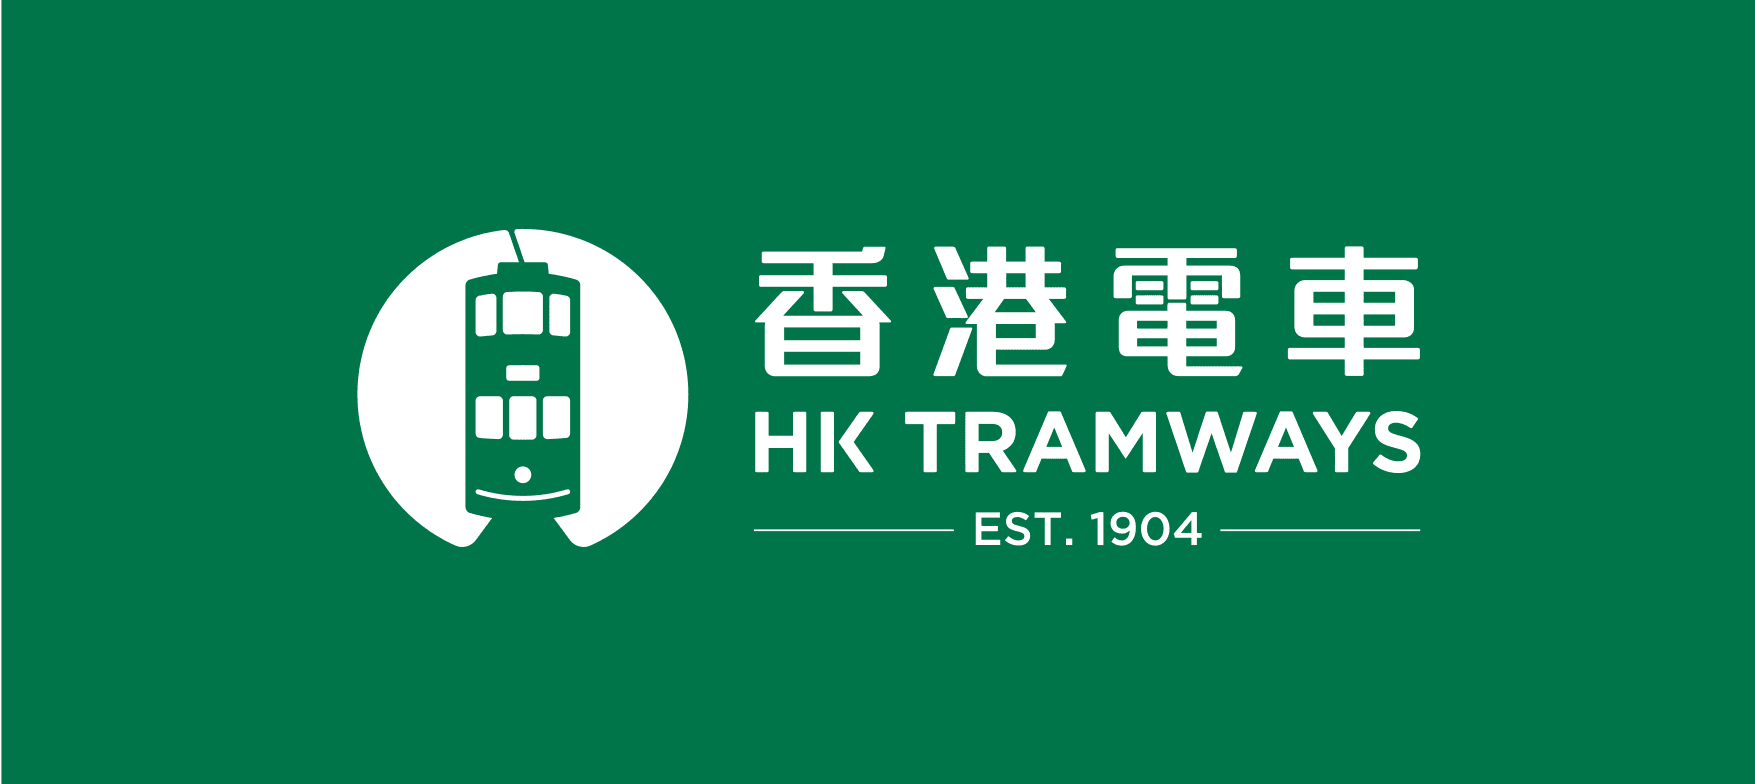 HK_Tramways バナー